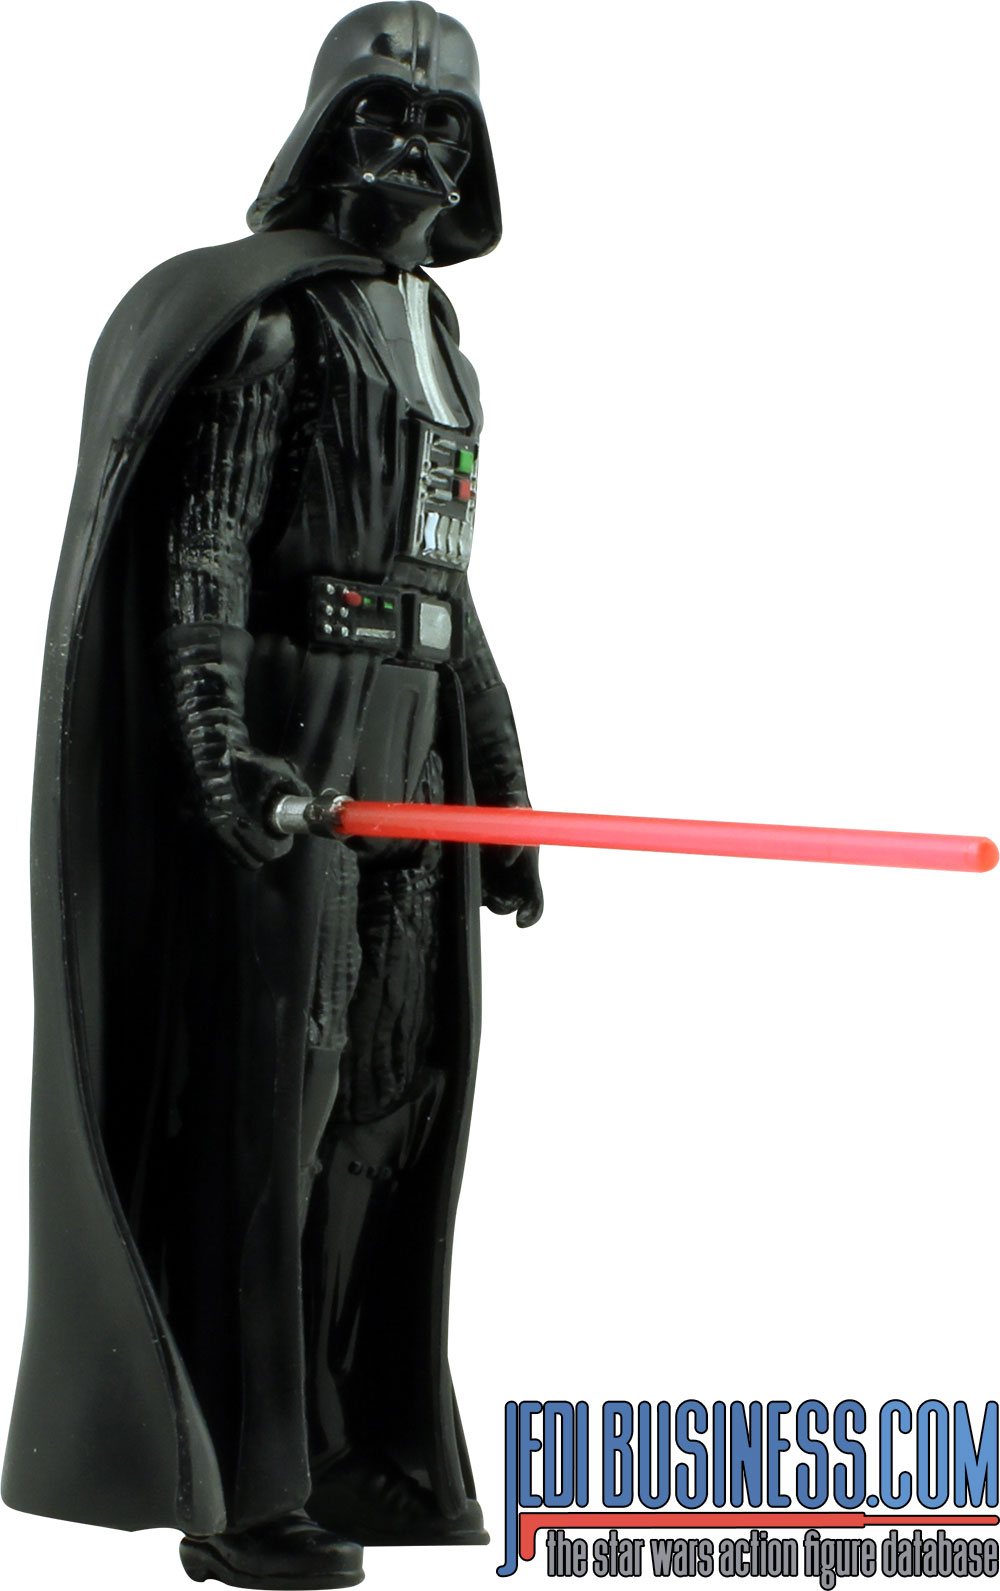 Darth Vader Rogue One